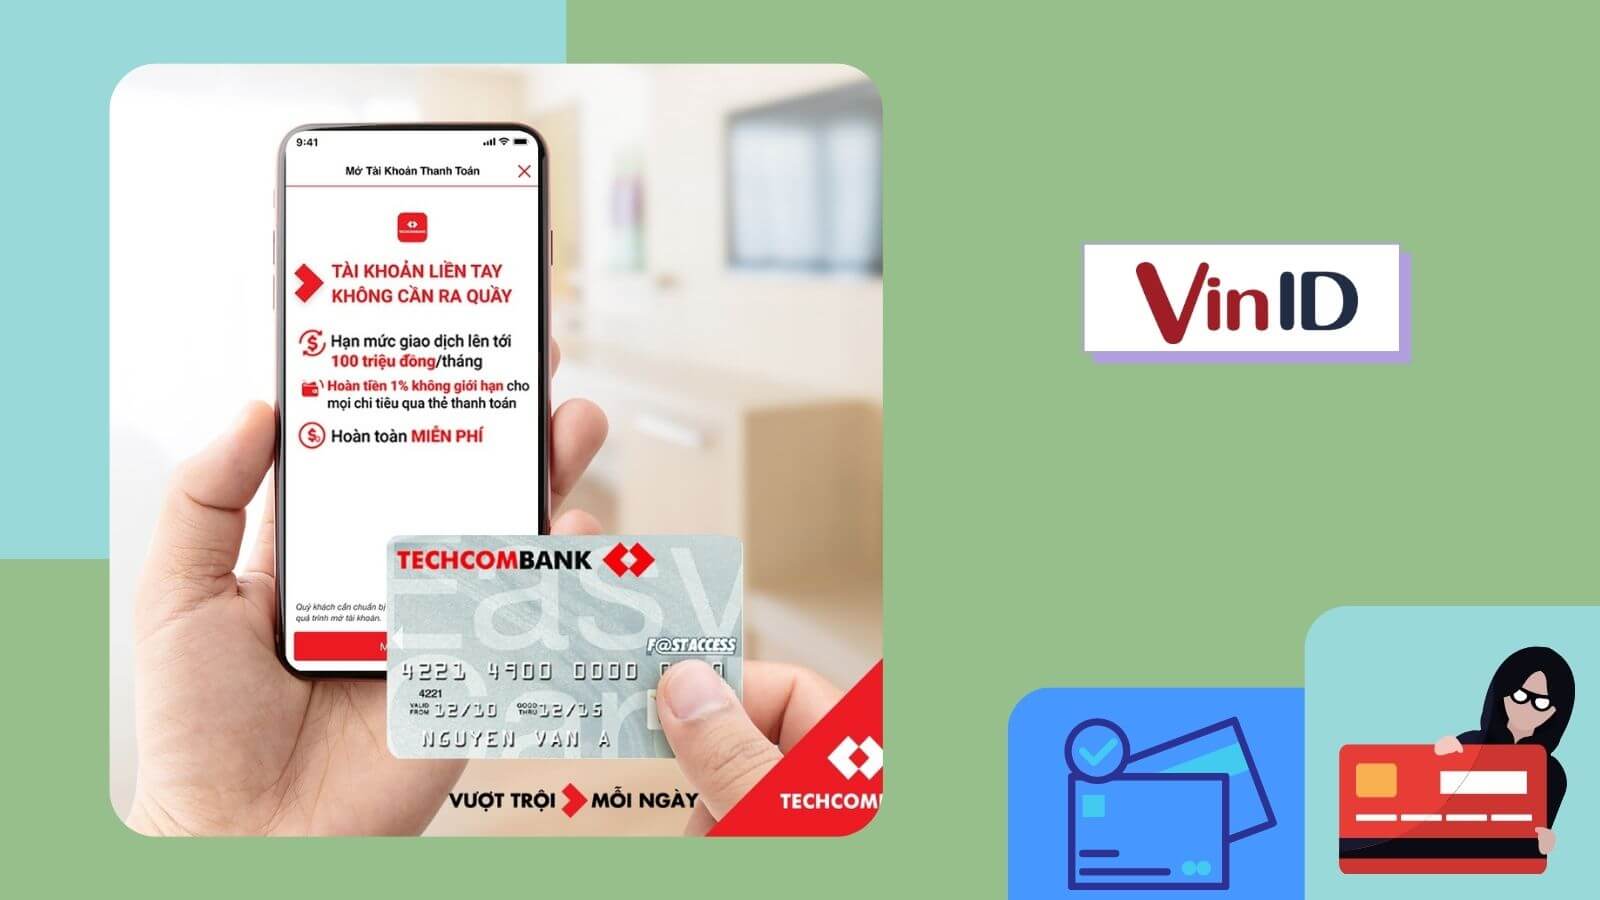 Làm thẻ ngân hàng online đơn giản hơn bao giờ hết với Techcombank. Bạn chỉ cần đăng ký trực tuyến và chụp ảnh thẻ của mình, và ngân hàng sẽ gửi thẻ mới đến tận địa chỉ của bạn. Làm thẻ nhanh chóng, tiện lợi, đảm bảo an toàn.